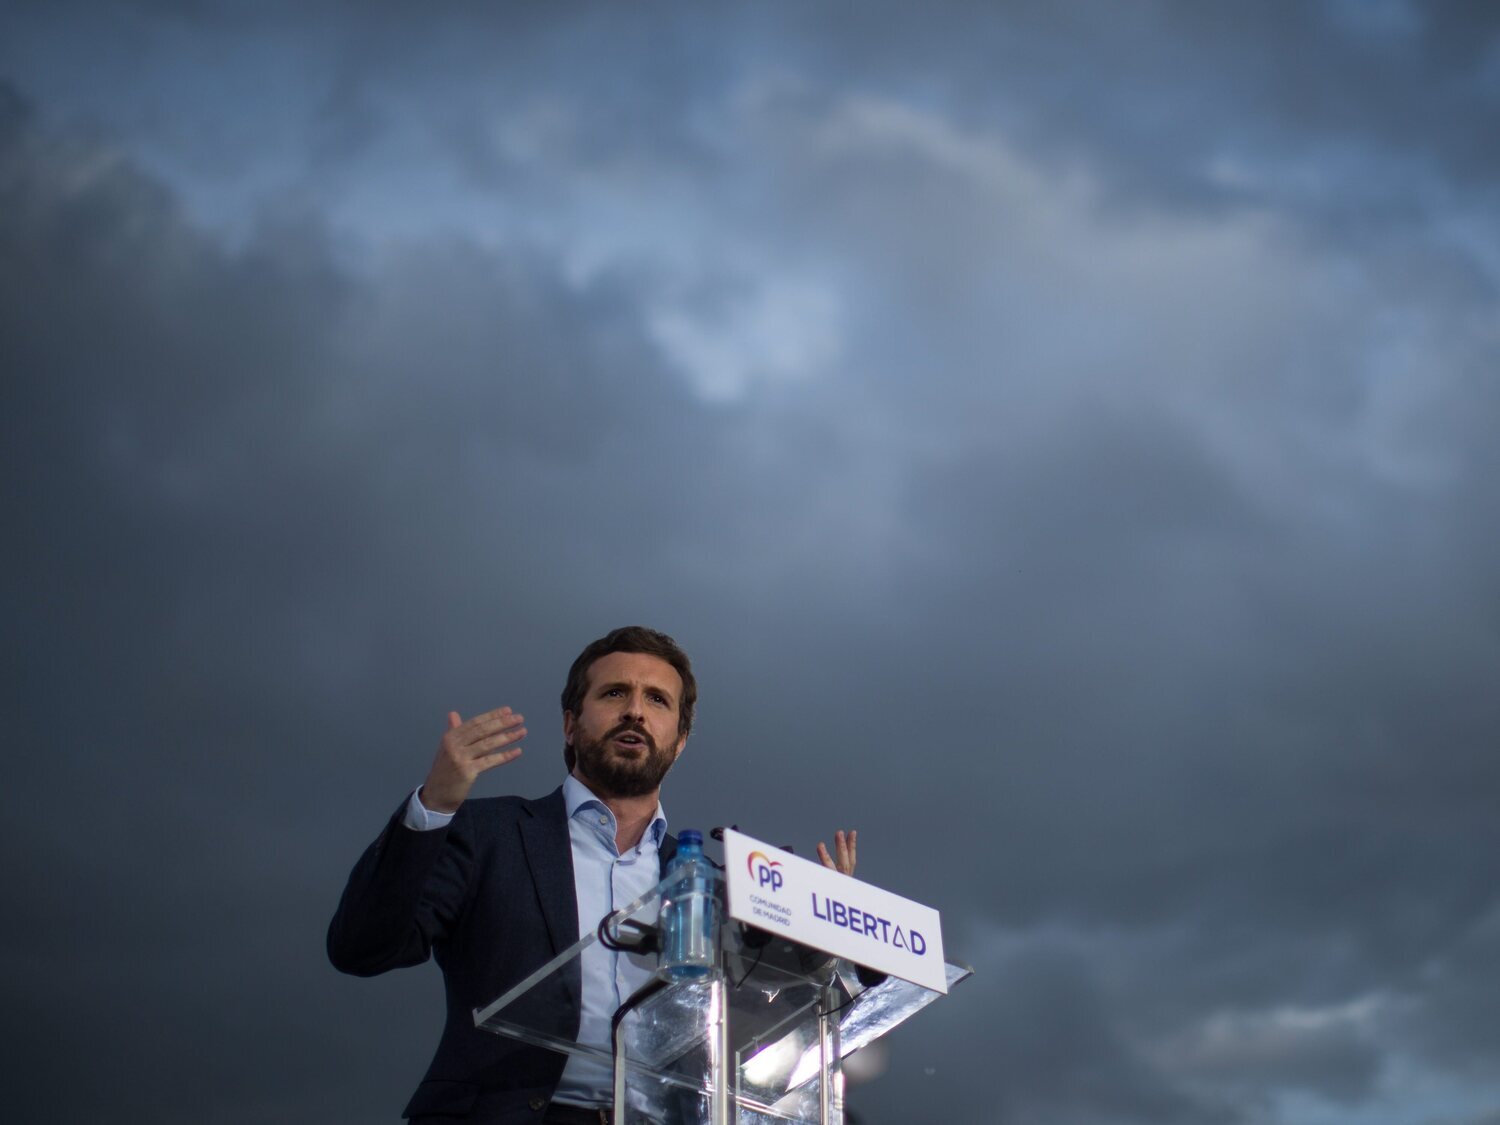 Mofas por las declaraciones de Pablo Casado sobre la energía solar: "No solo le regalaron el máster"